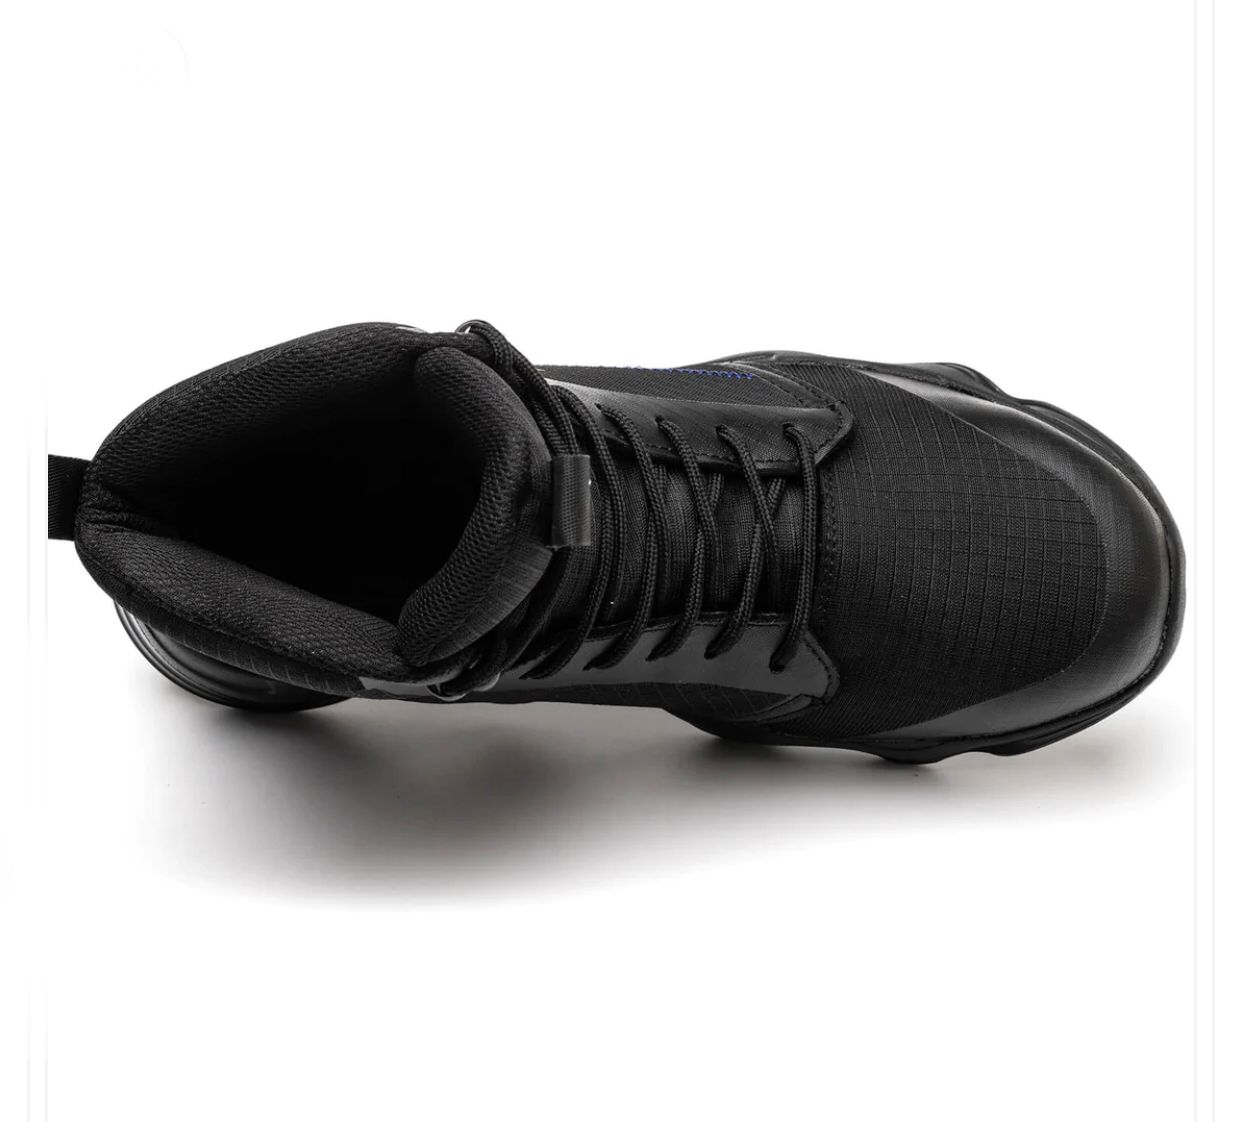 Kiyard- Steel Toe Safety Shoes Black style-01